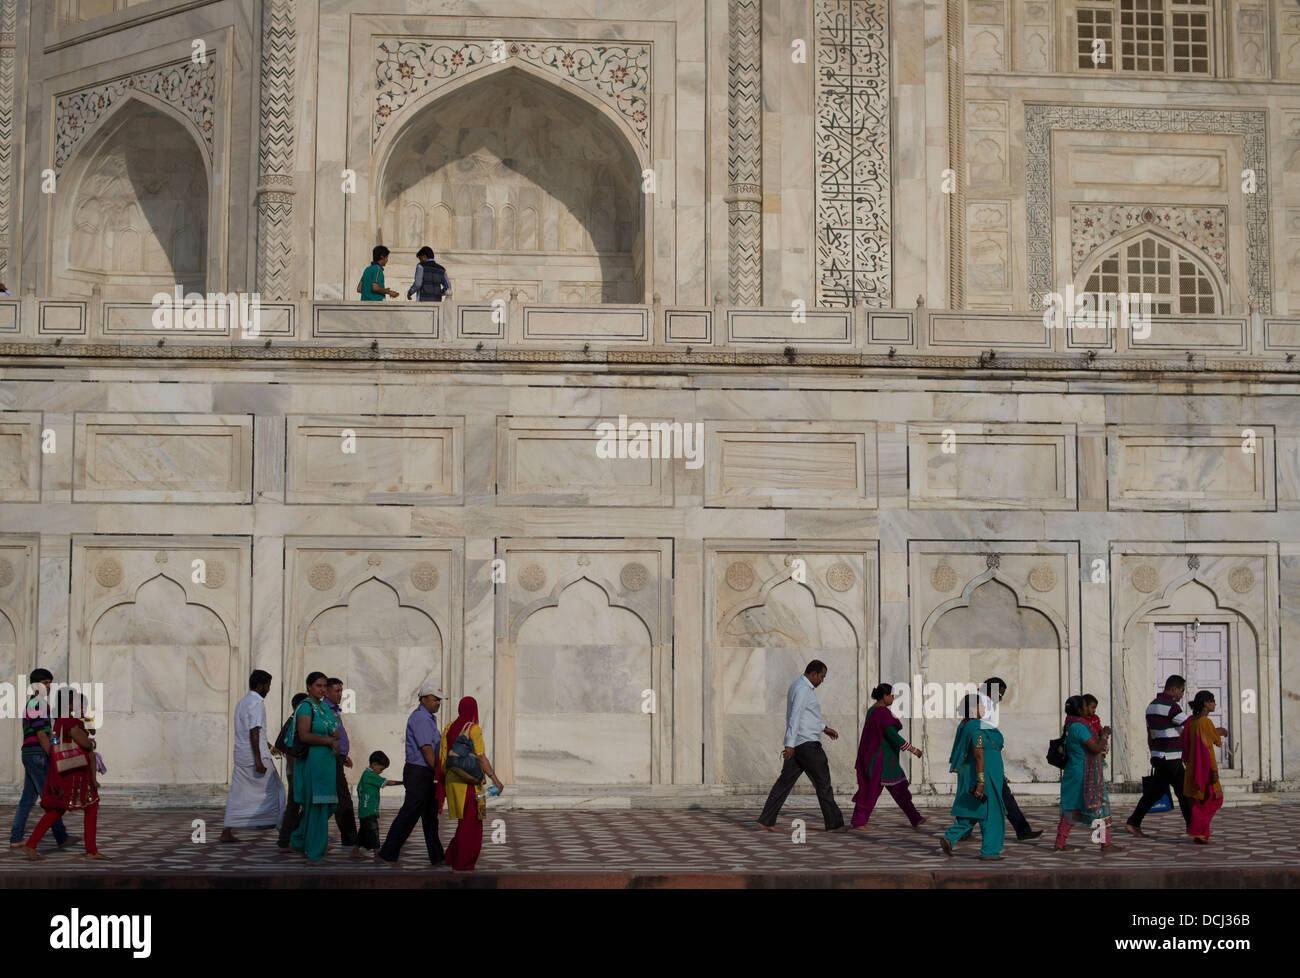 Les touristes visitant le Taj Mahal, mausolée de marbre blanc - Agra (Inde), site du patrimoine mondial de l'UNESCO Banque D'Images